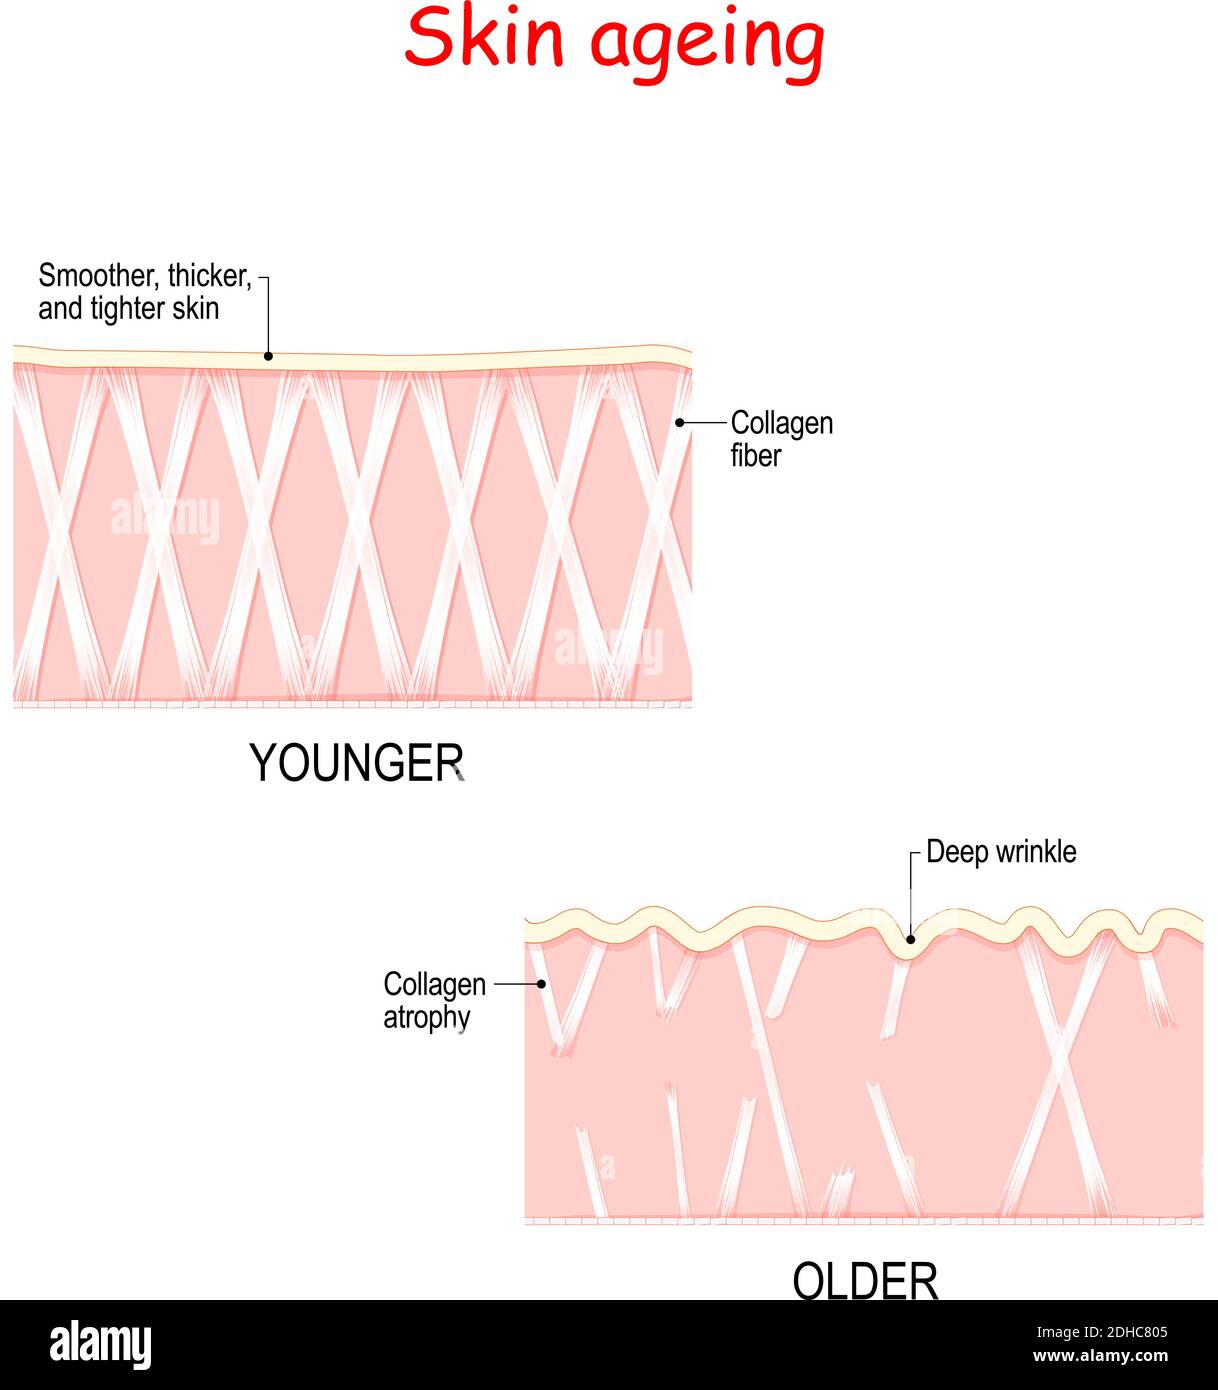 Visuelle Darstellung von Hautveränderungen über ein Leben. In Young Skin Collagen und Elastin bilden die Struktur der Dermis macht es eng und plump. Stock Vektor